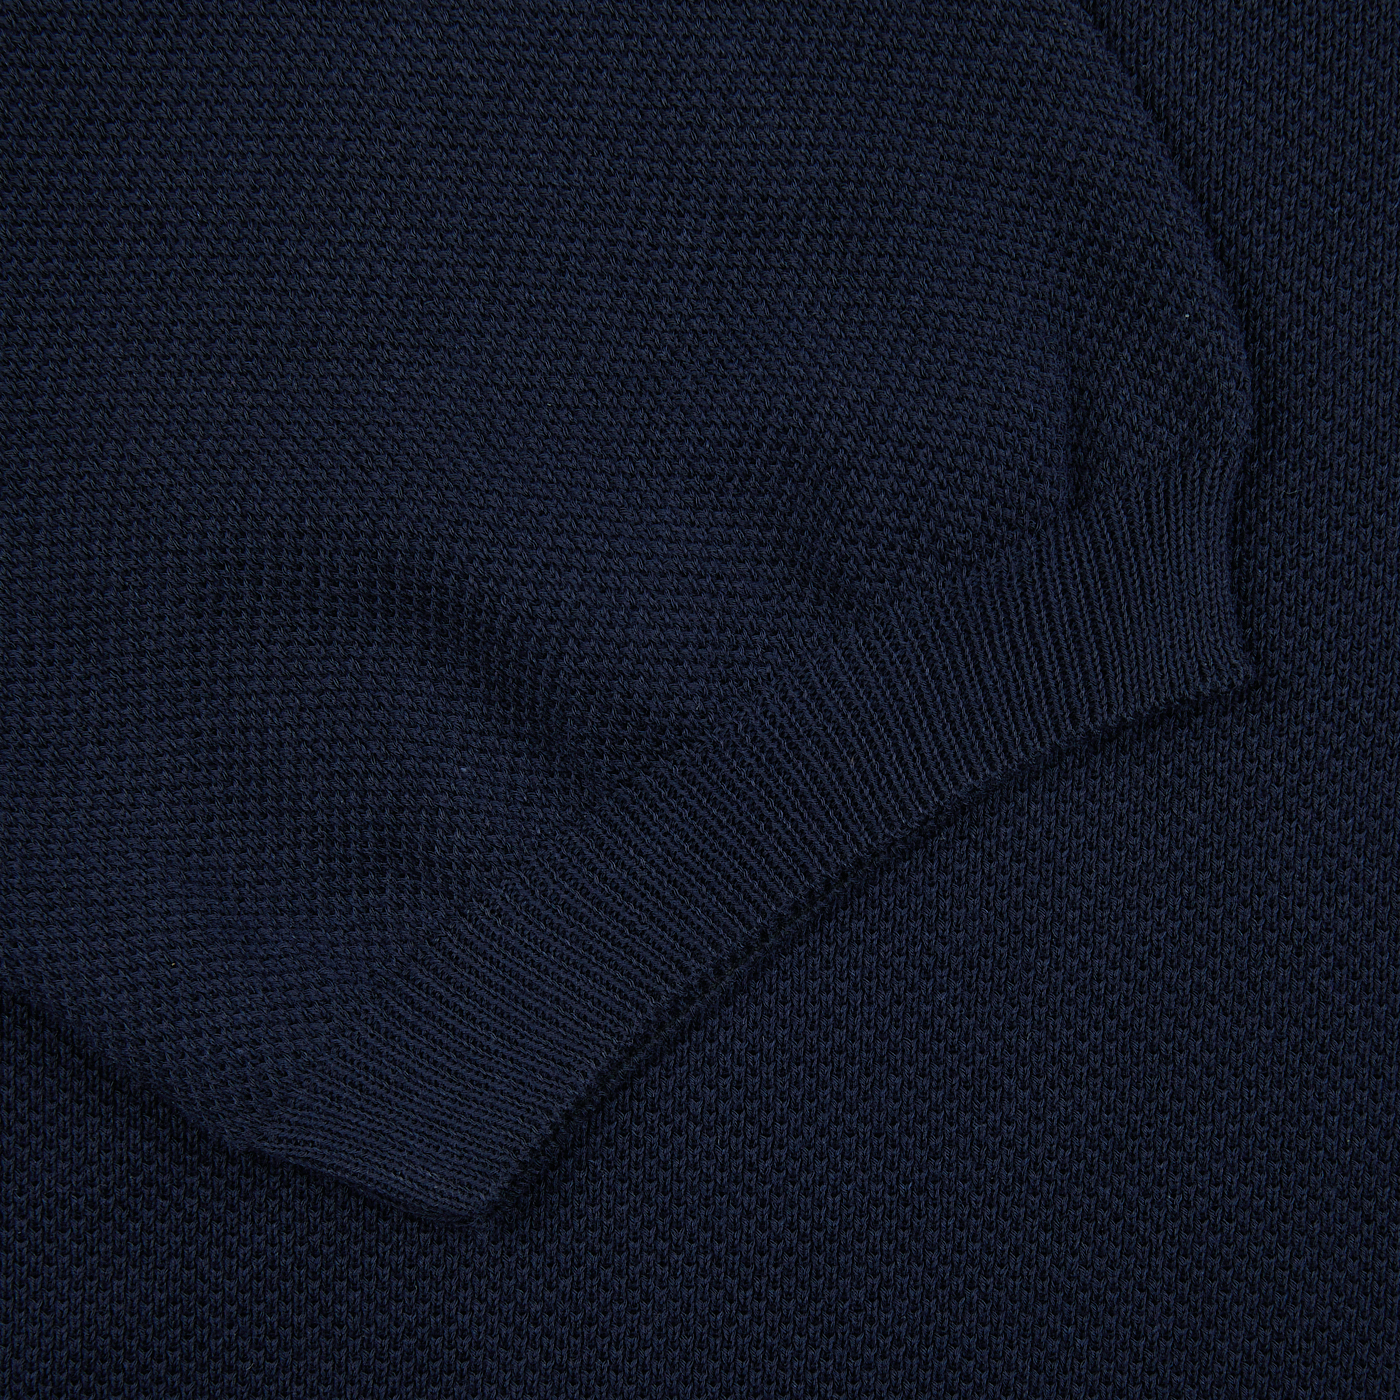 A close up of a Gran Sasso Navy Fresh Cotton Mesh Polo Shirt.